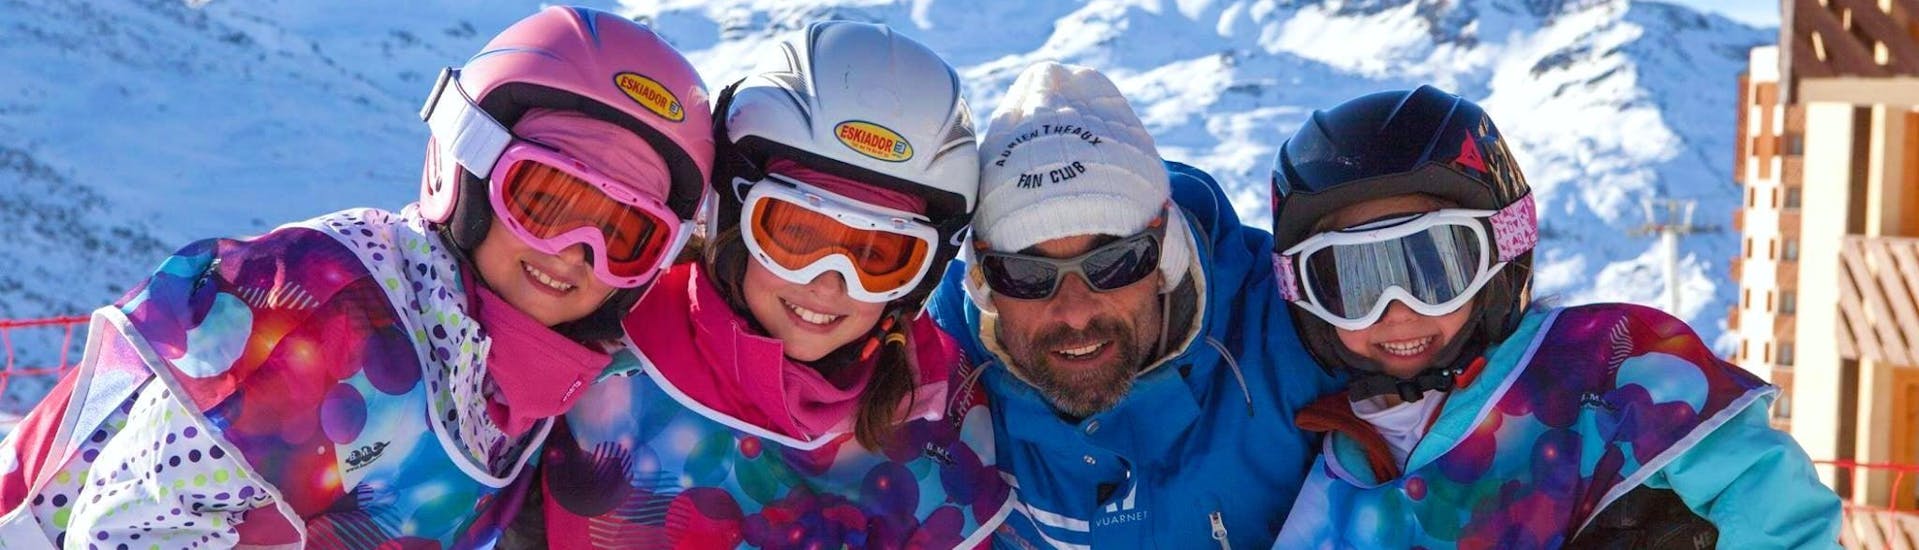 Clases de esquí para niños a partir de 5 años.